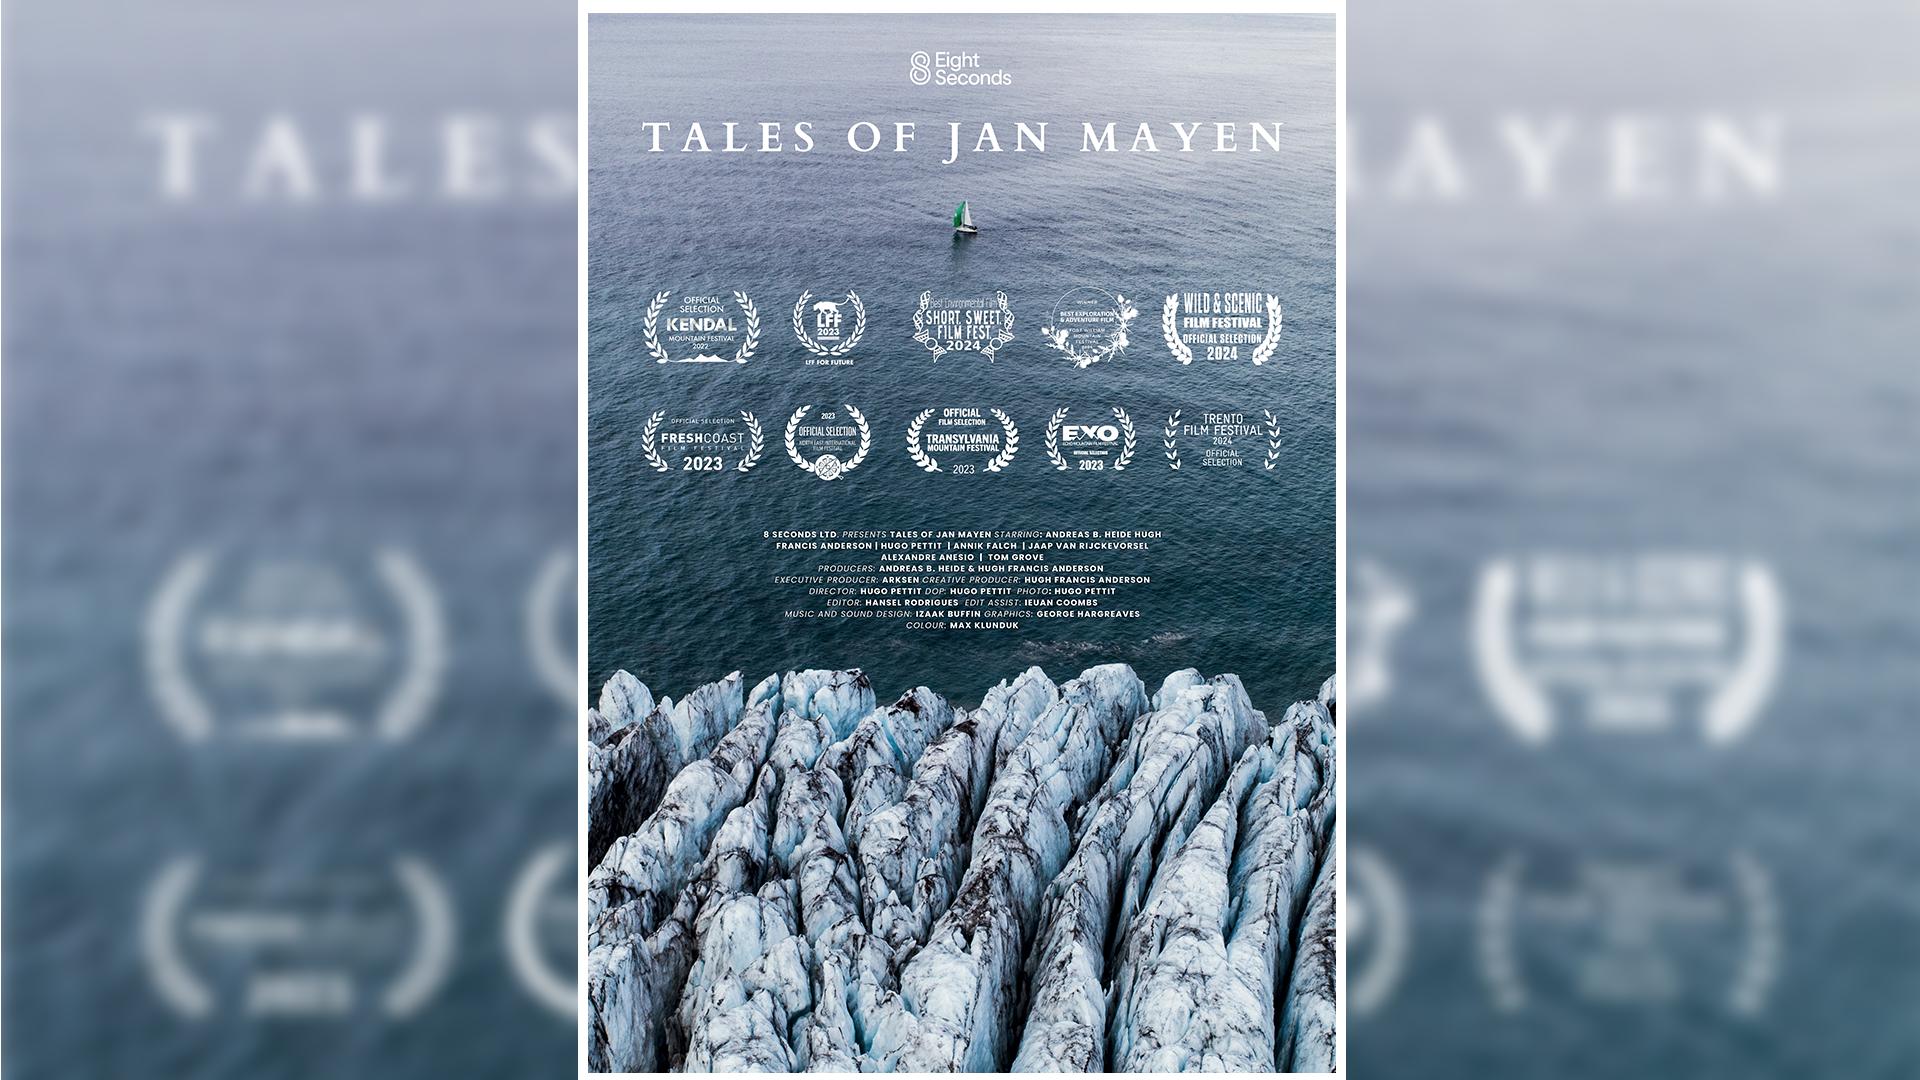 Tales of Jan Mayen